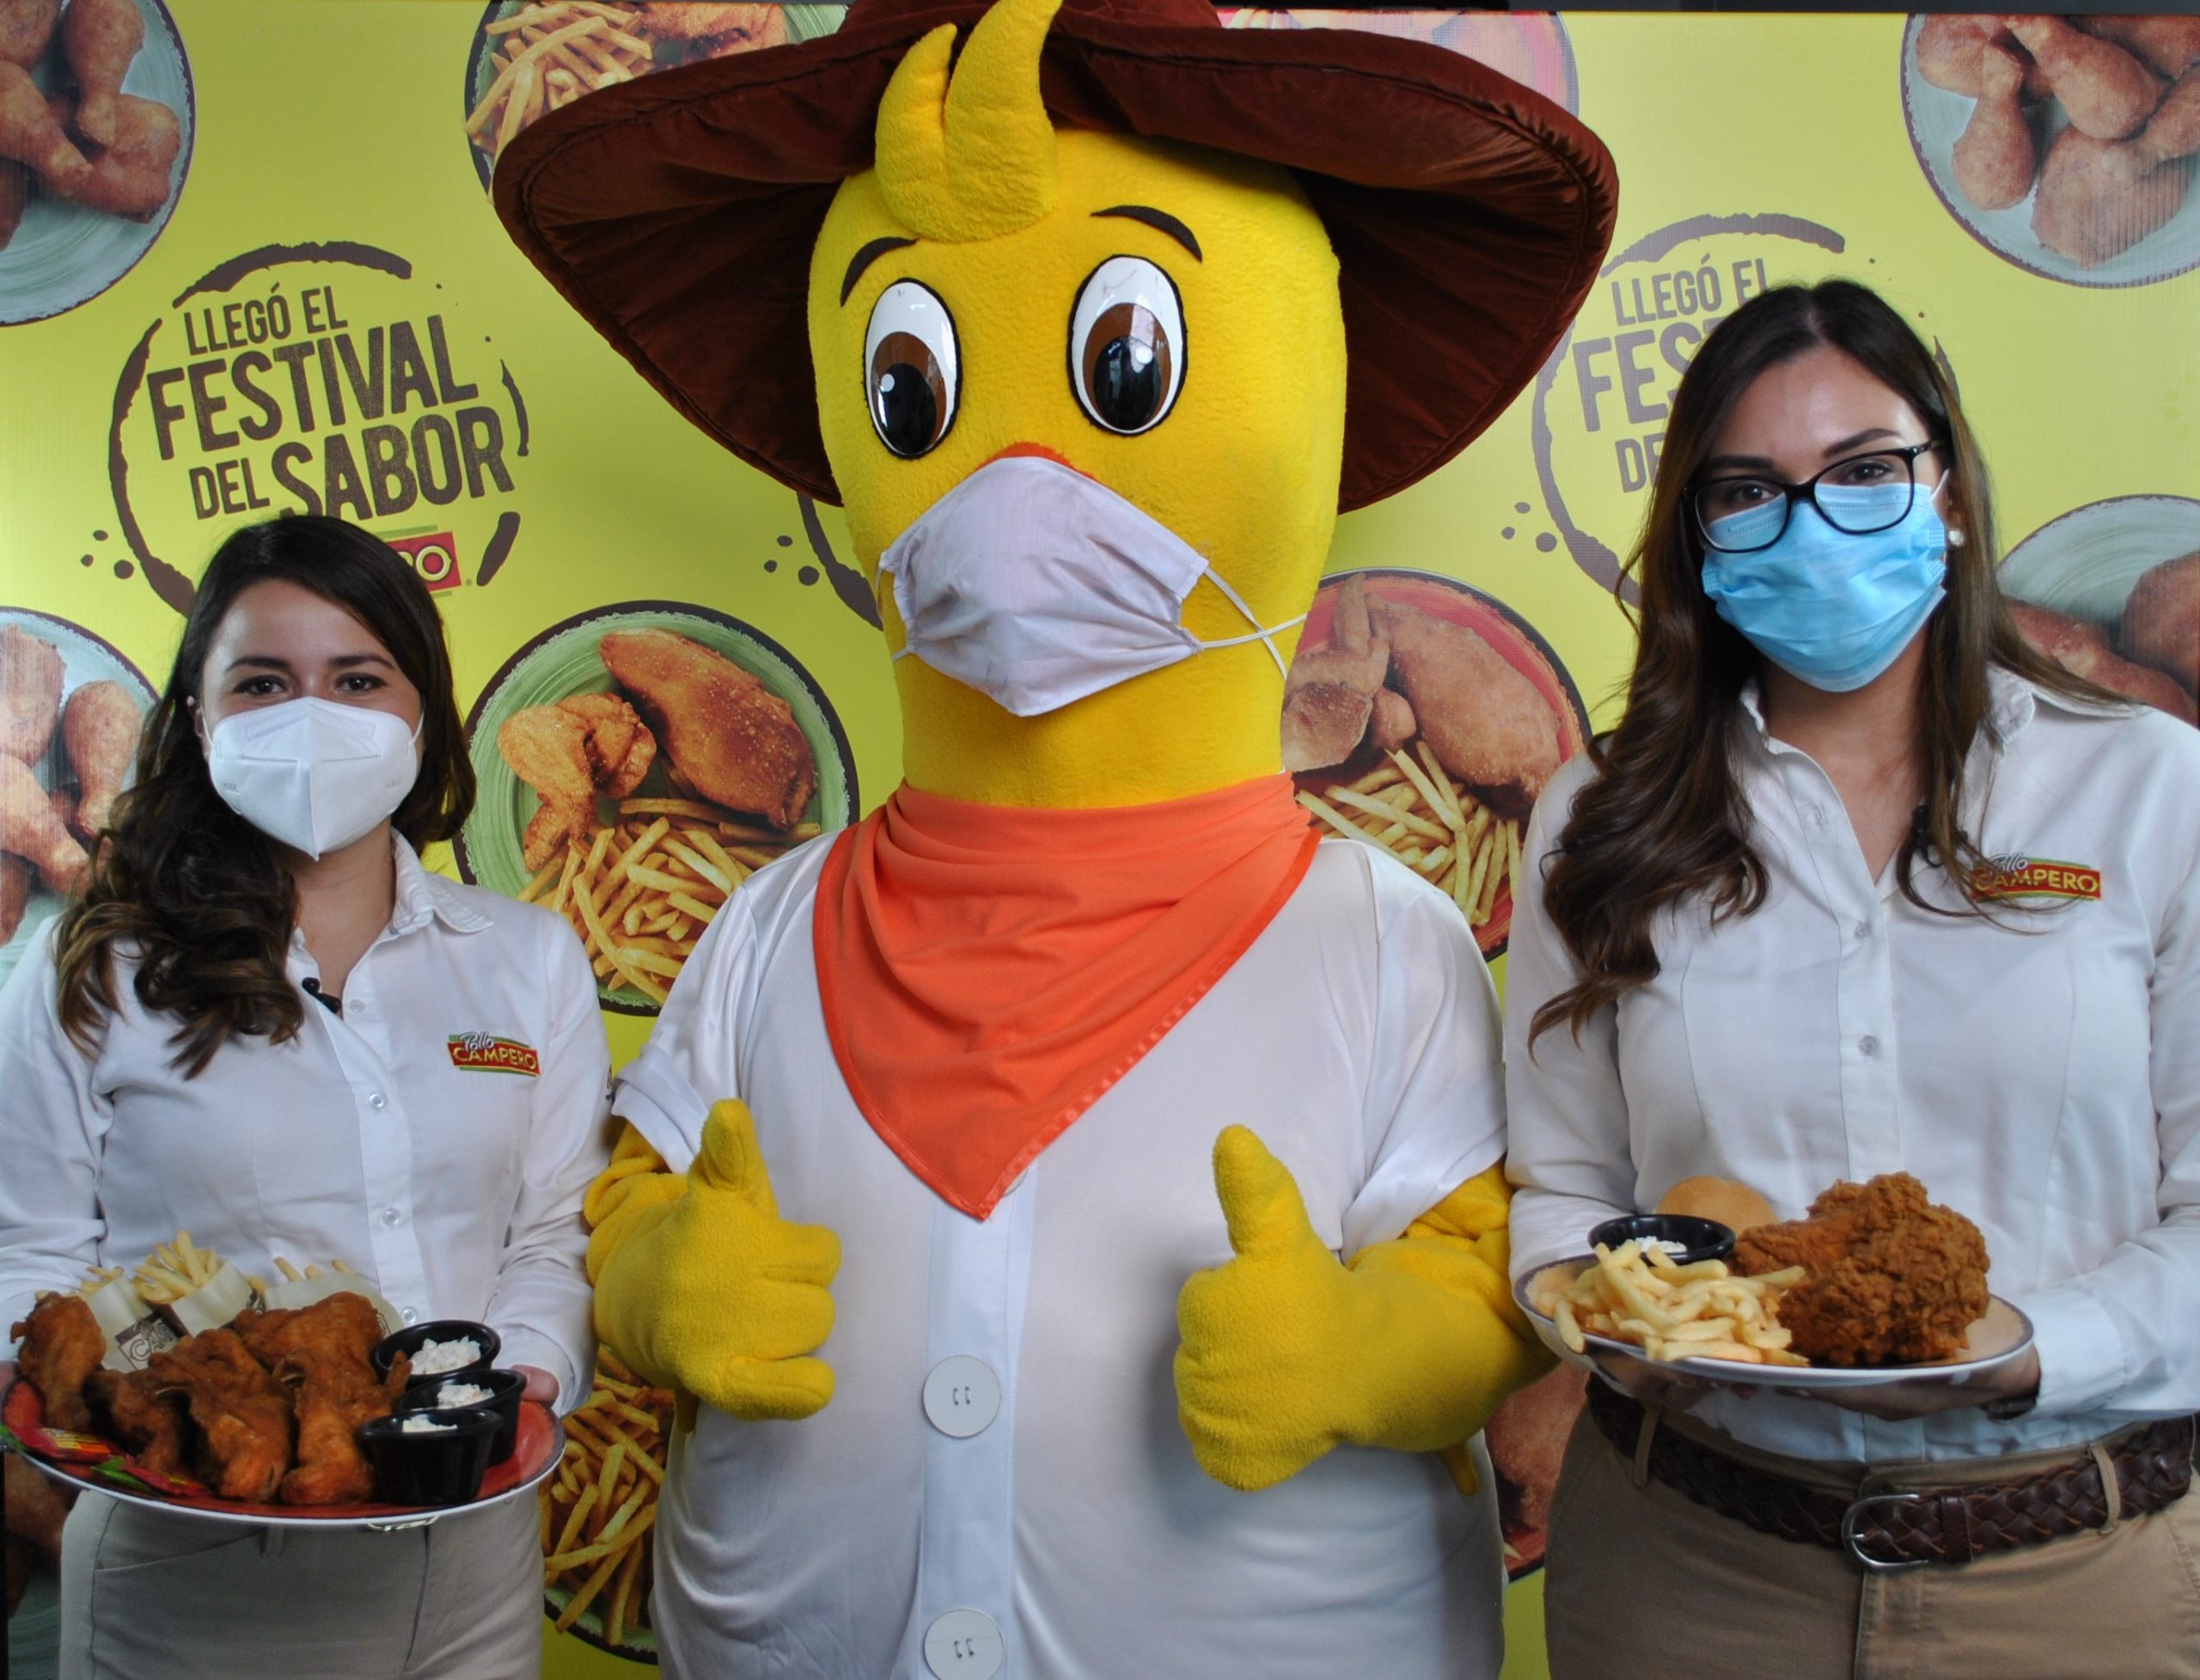 Pollo Campero Llega el "Festival del sabor" CRN Noticias